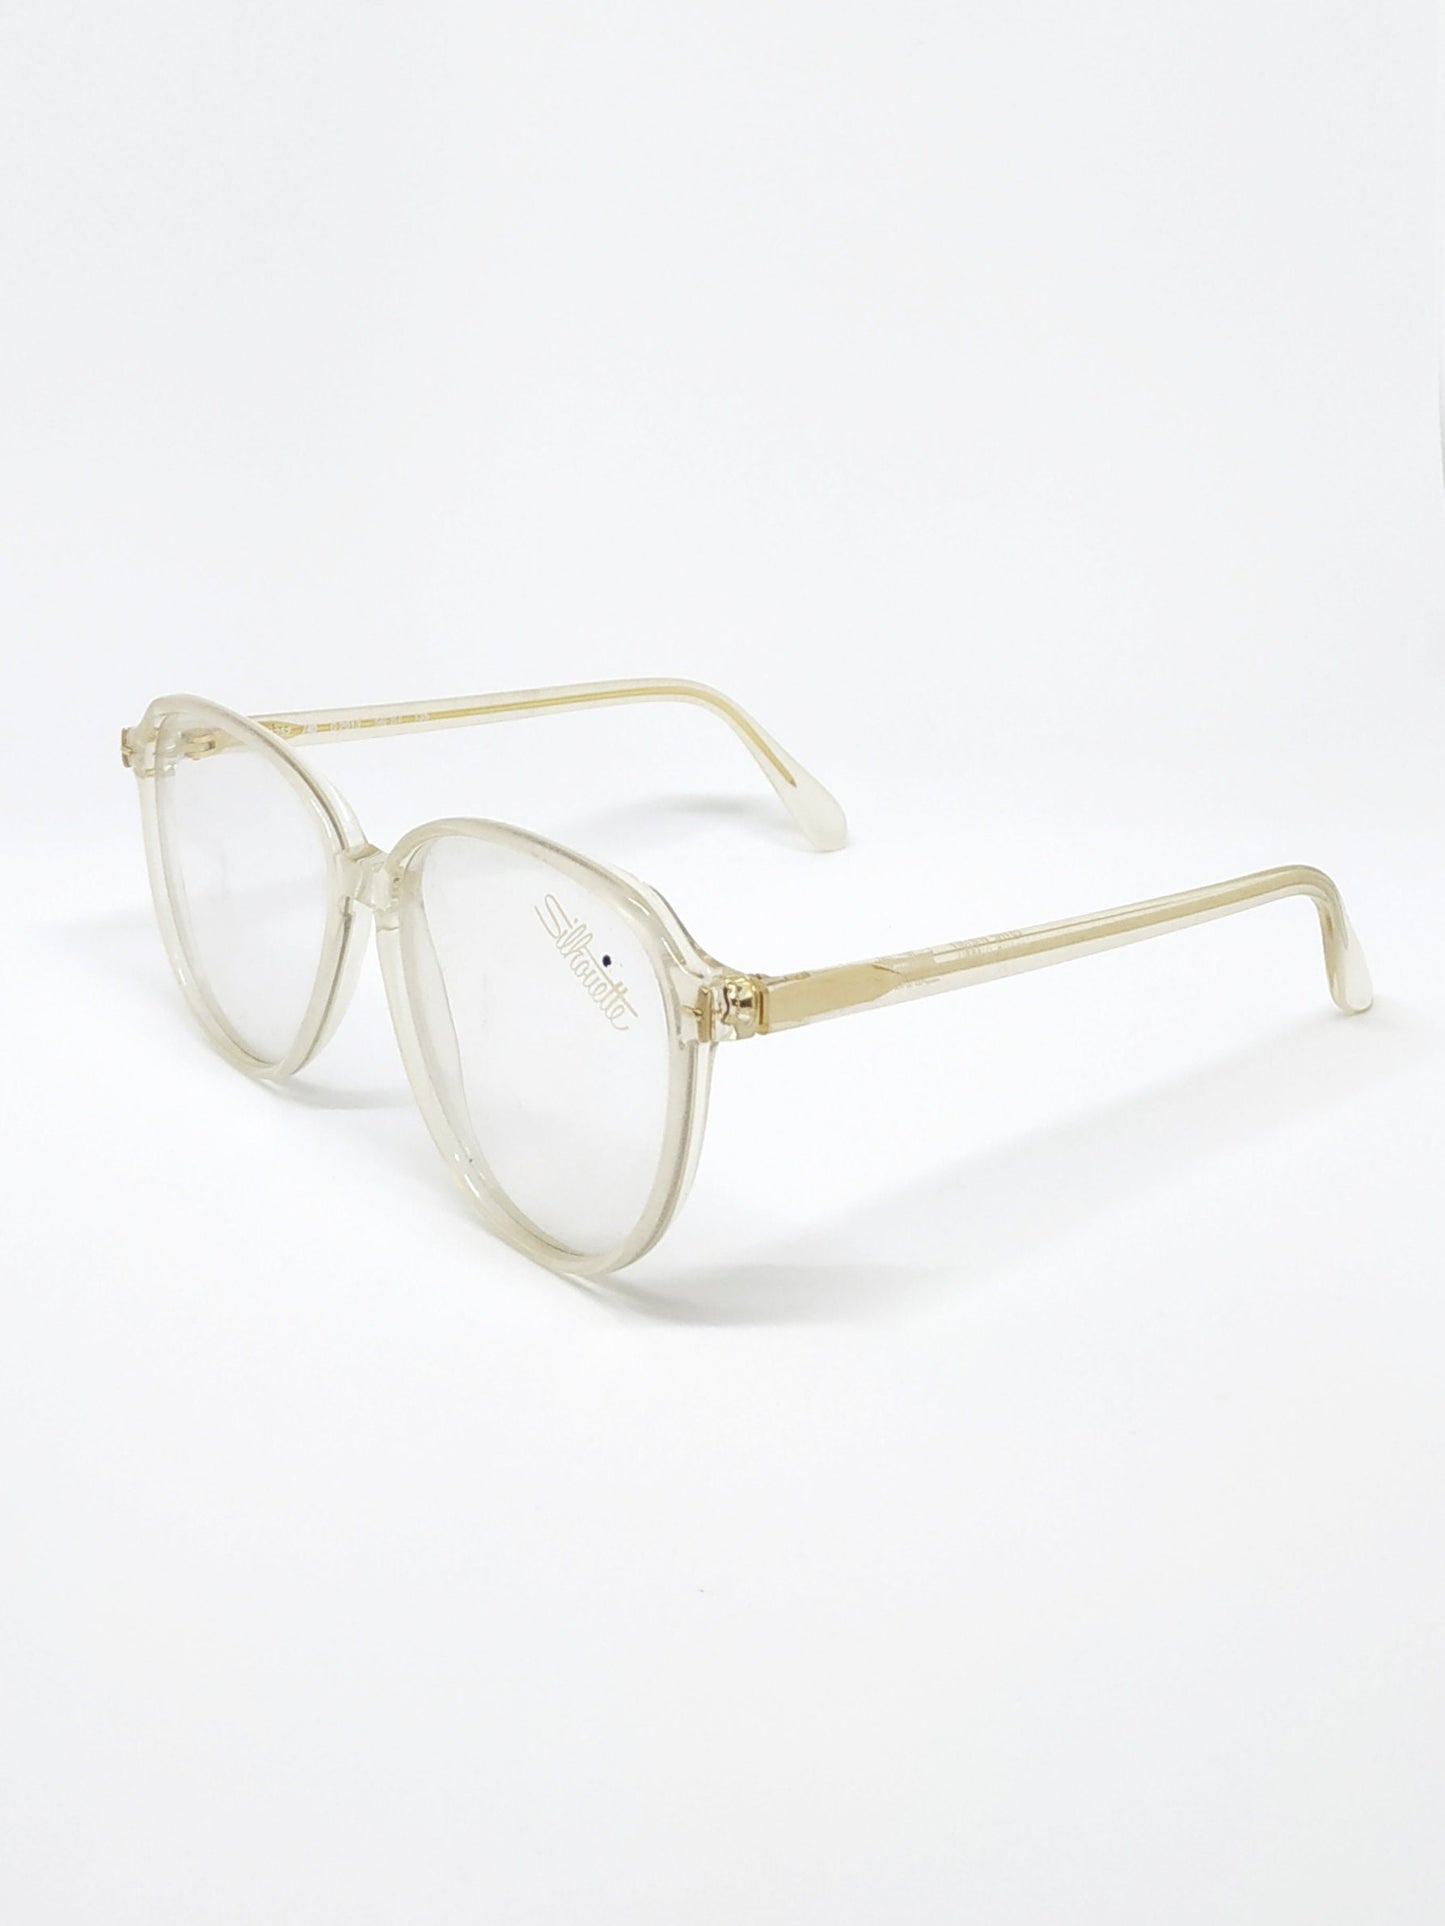 Vintage New old stock eyeglasses frames. Mod. M1252